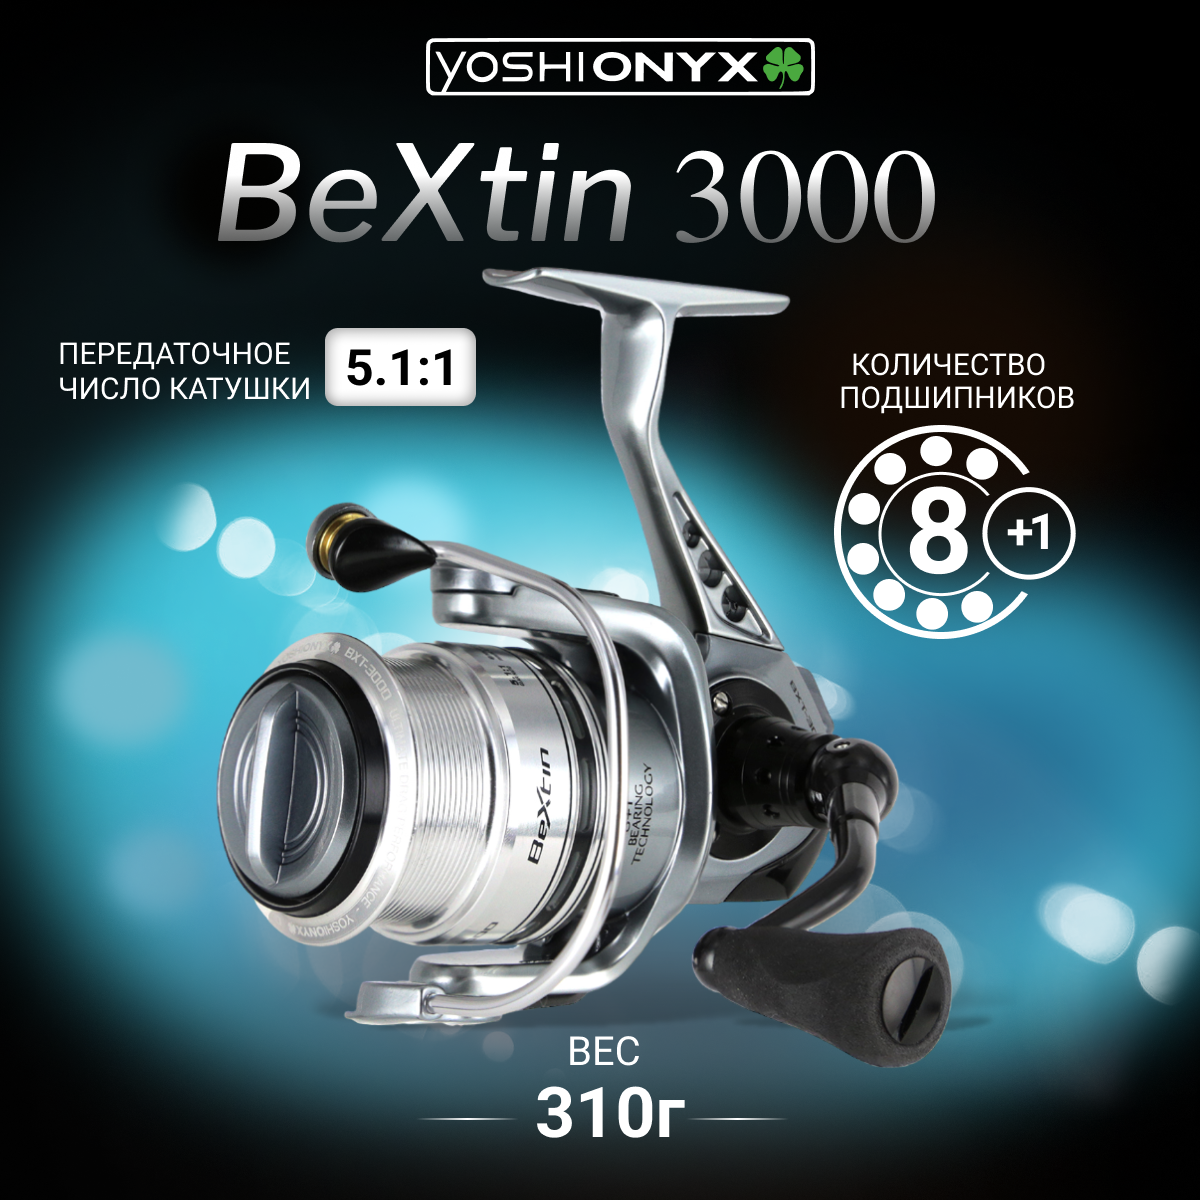 Катушка безынерционная Yoshi Onyx BEXTIN 3000